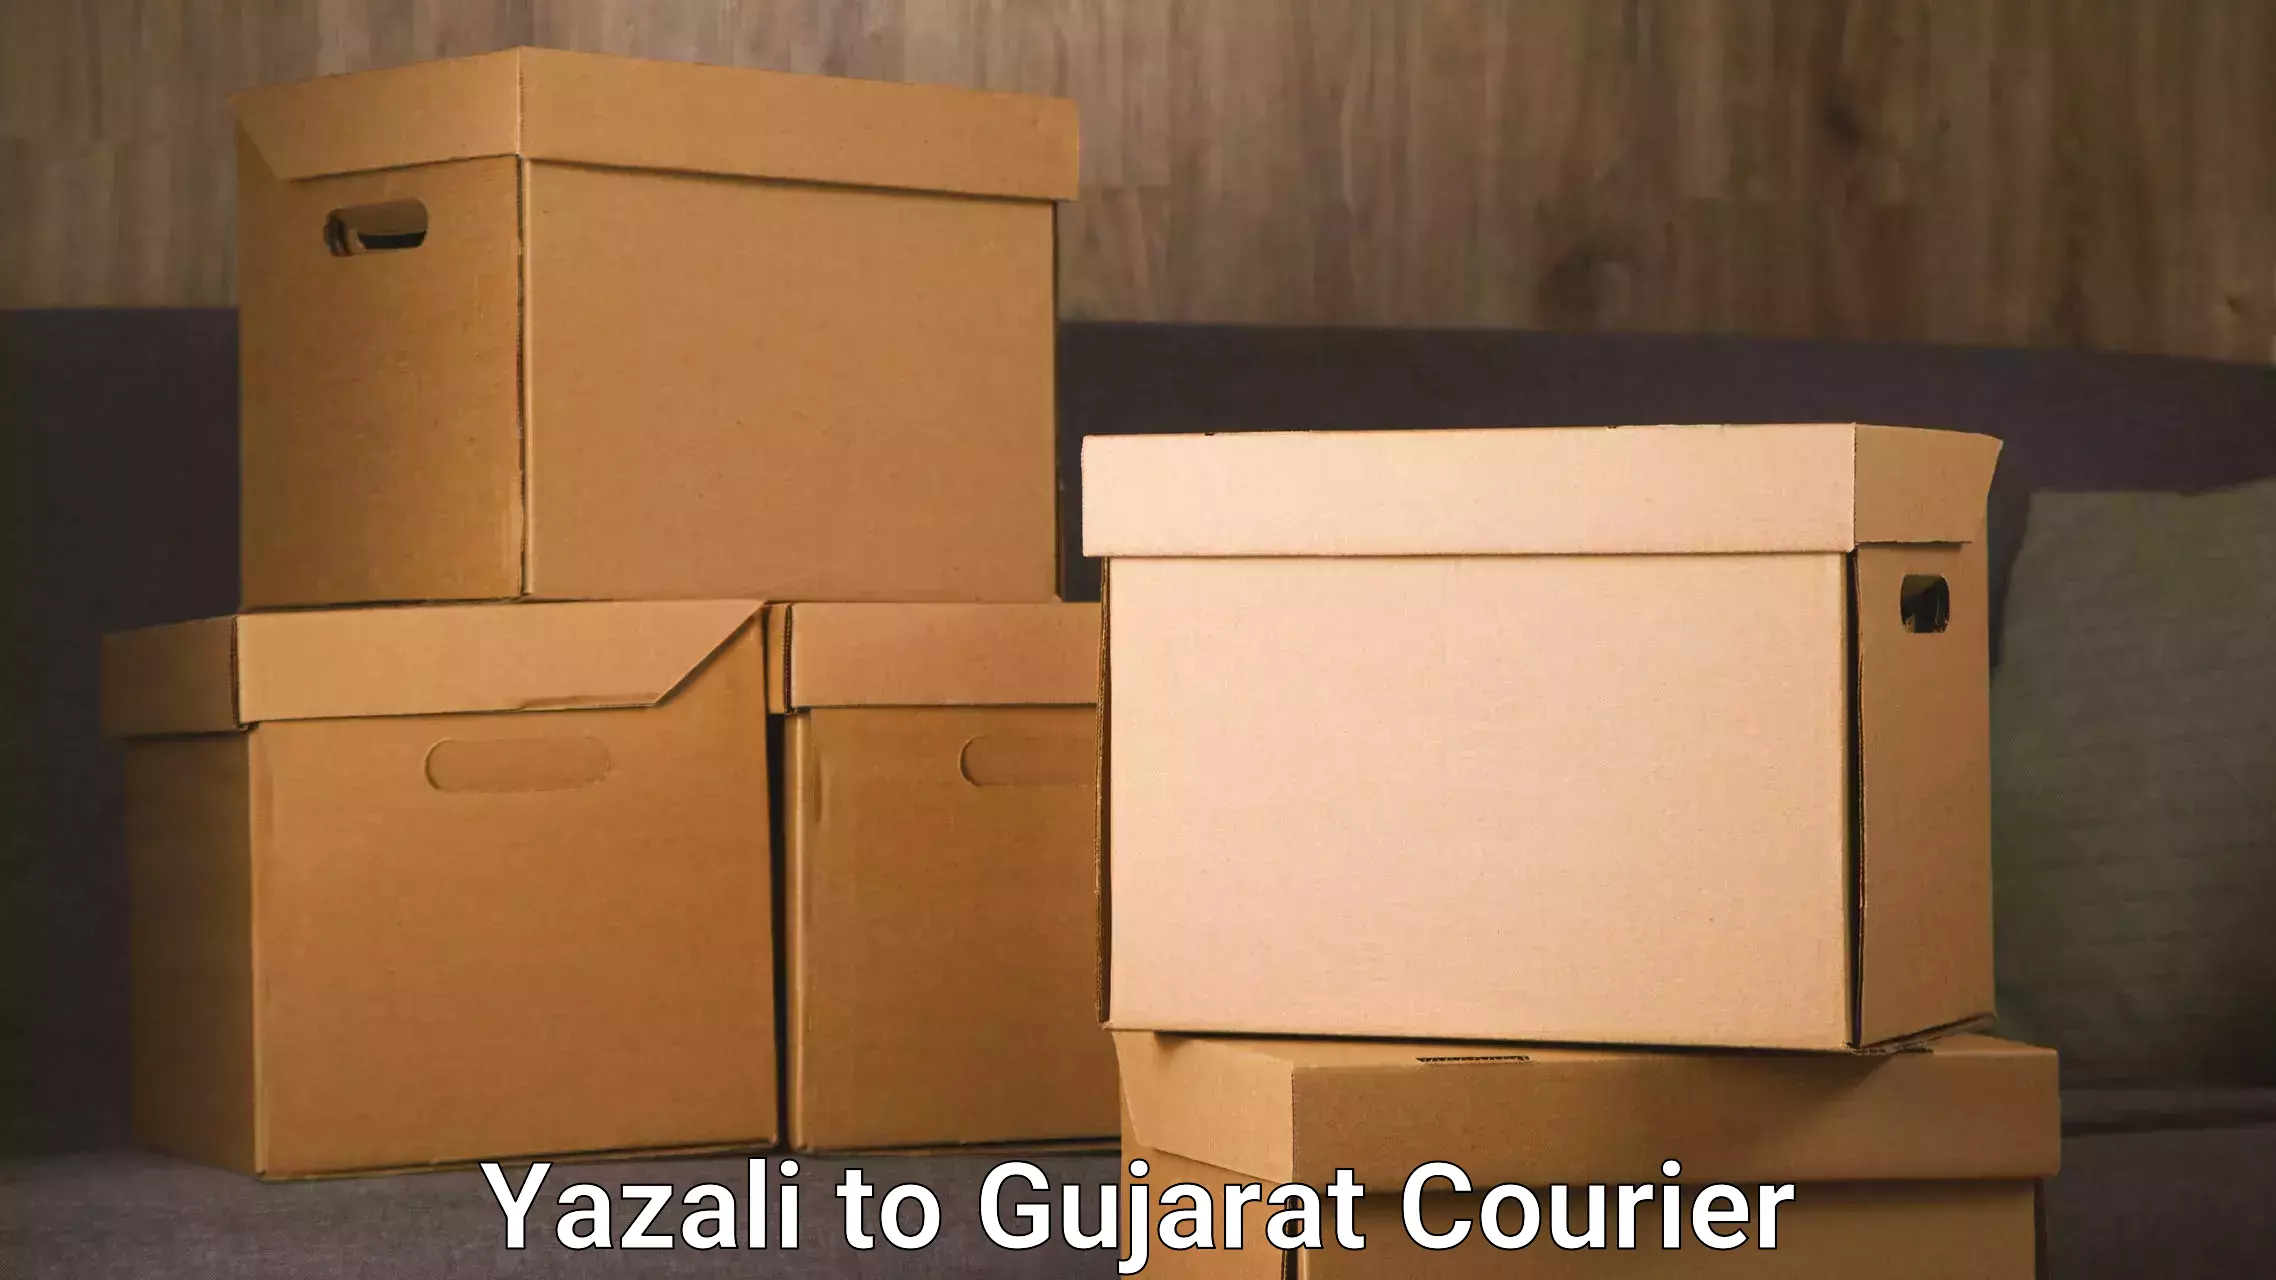 Efficient freight service Yazali to Gujarat